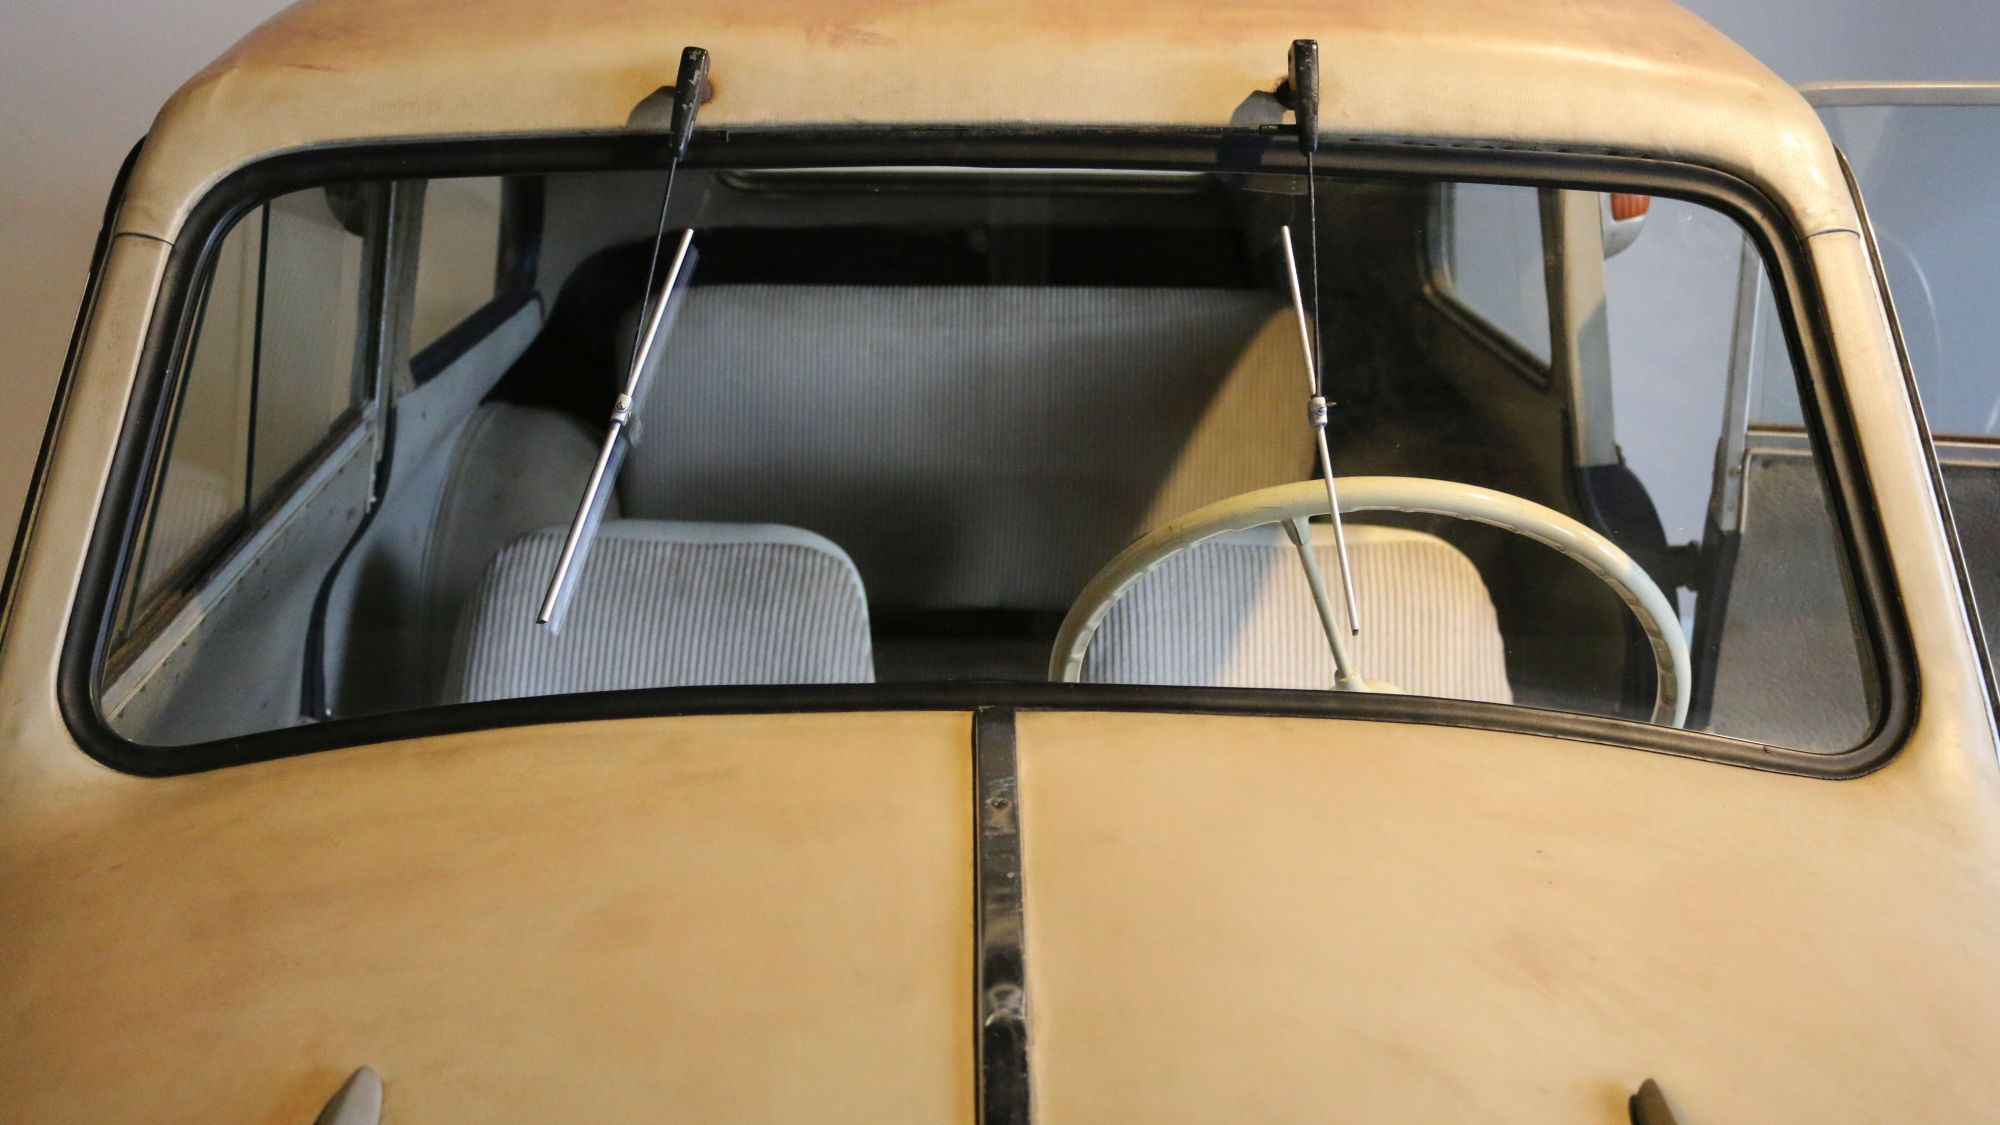 Blick über die beige Motorhaube eines Kleinwagens in das graubezogene Innere des Autos.